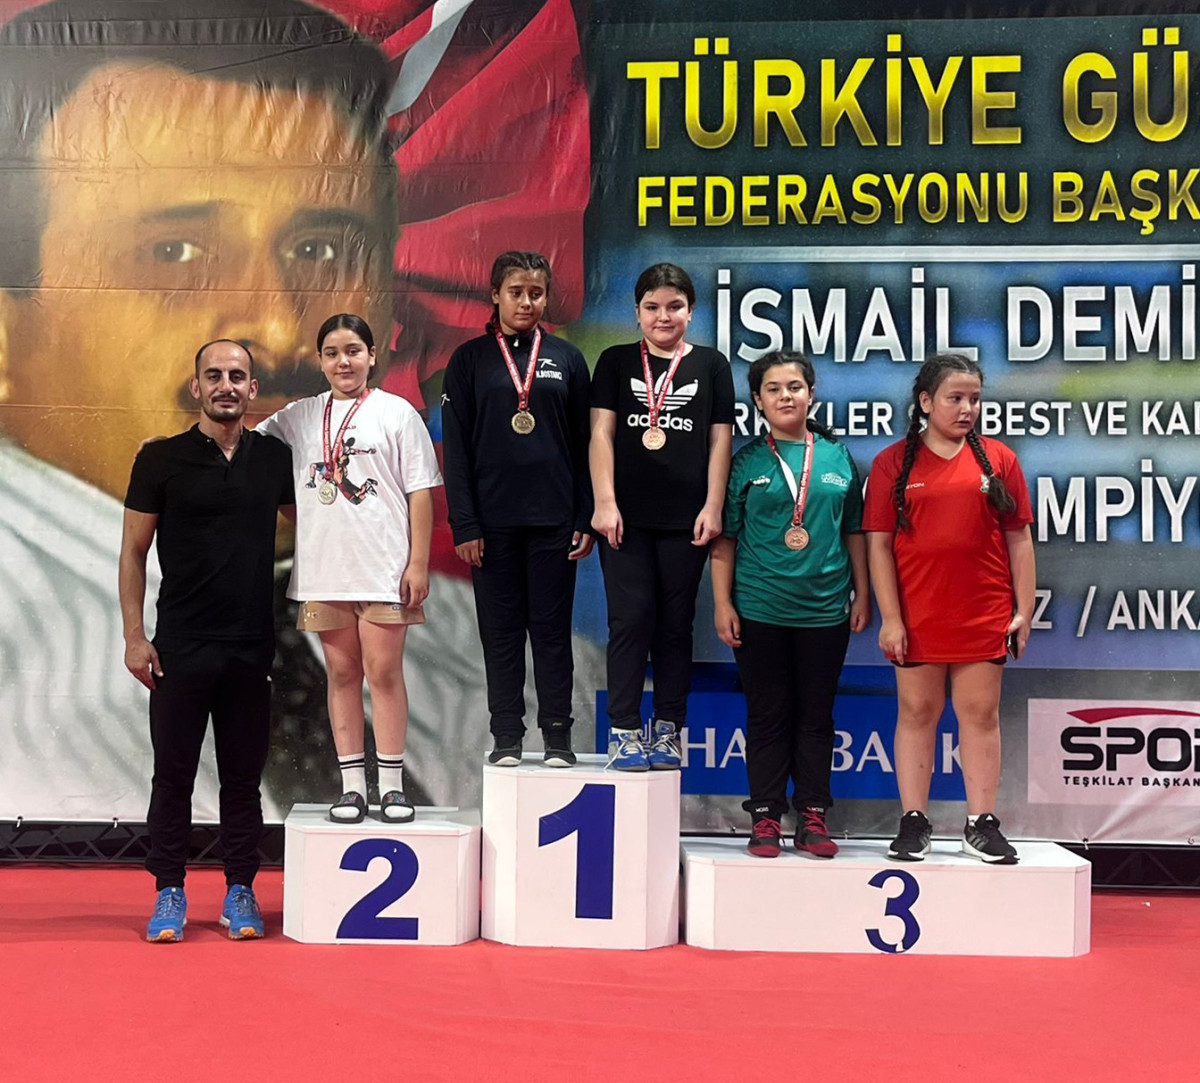  Burdurlu güreşçi Türkiye ikincisi